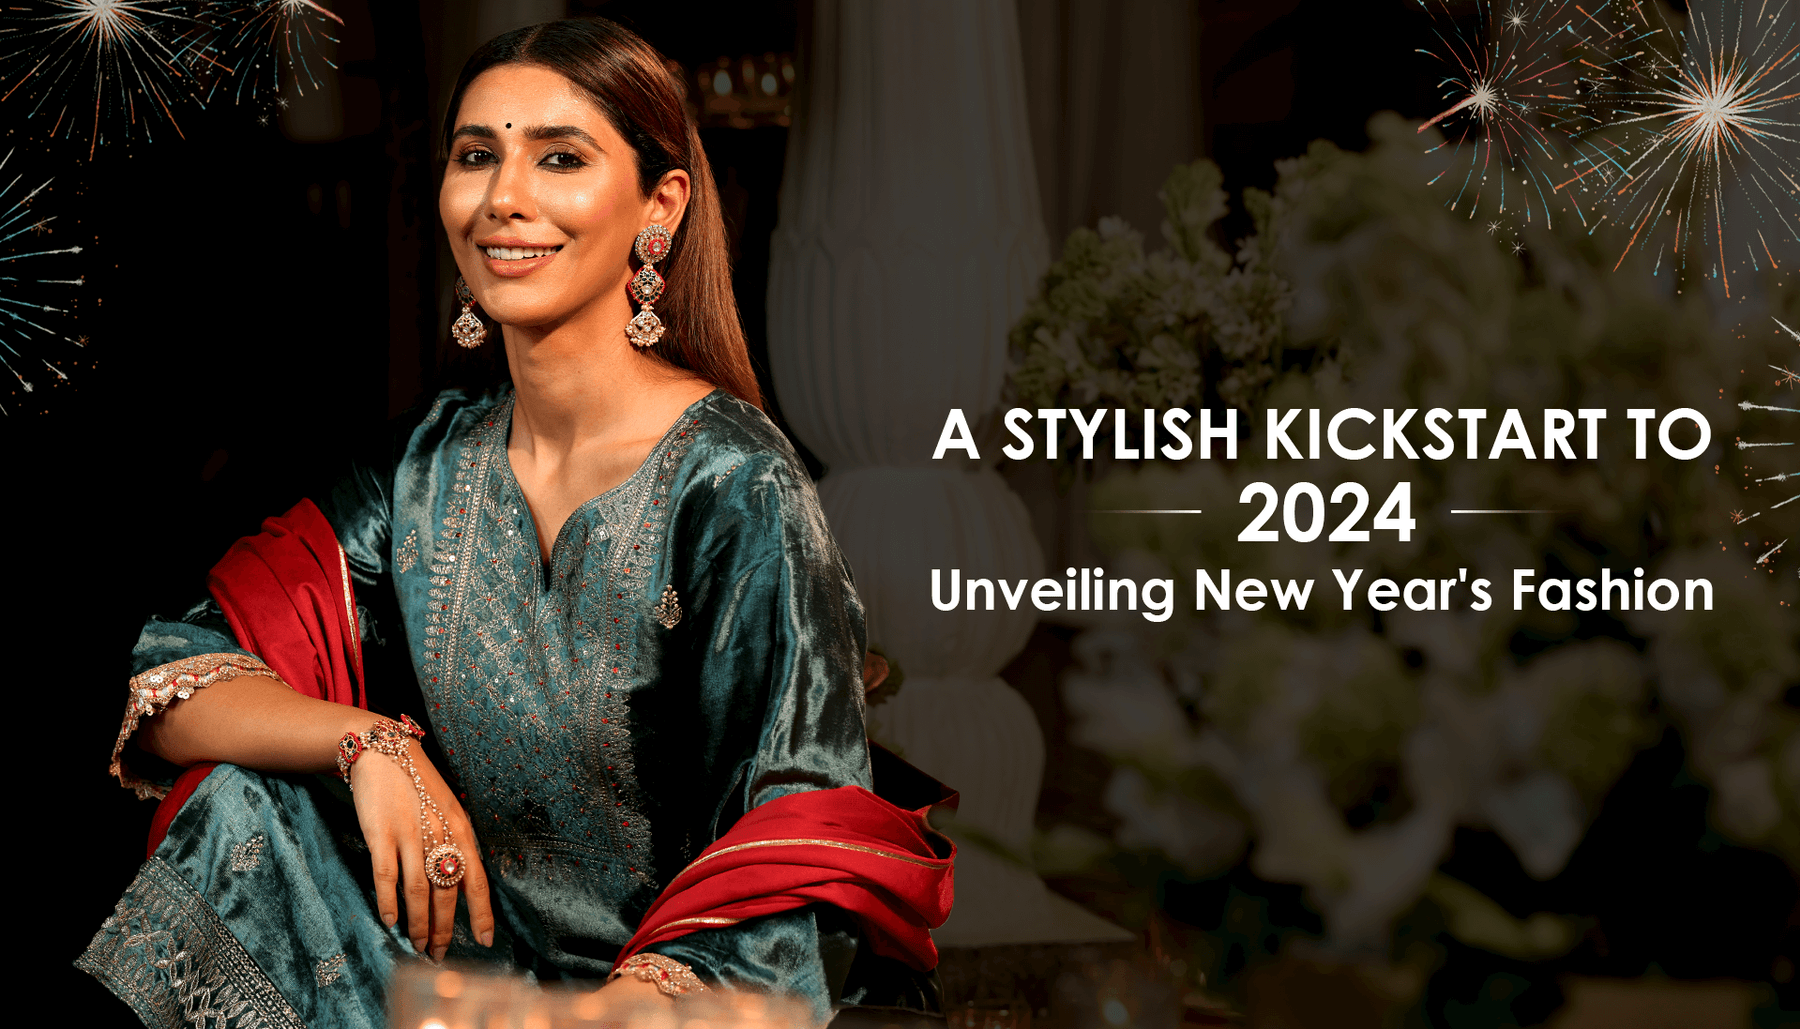 A Stylish Kickstart To 2024 Unveiling New Year's Fashion